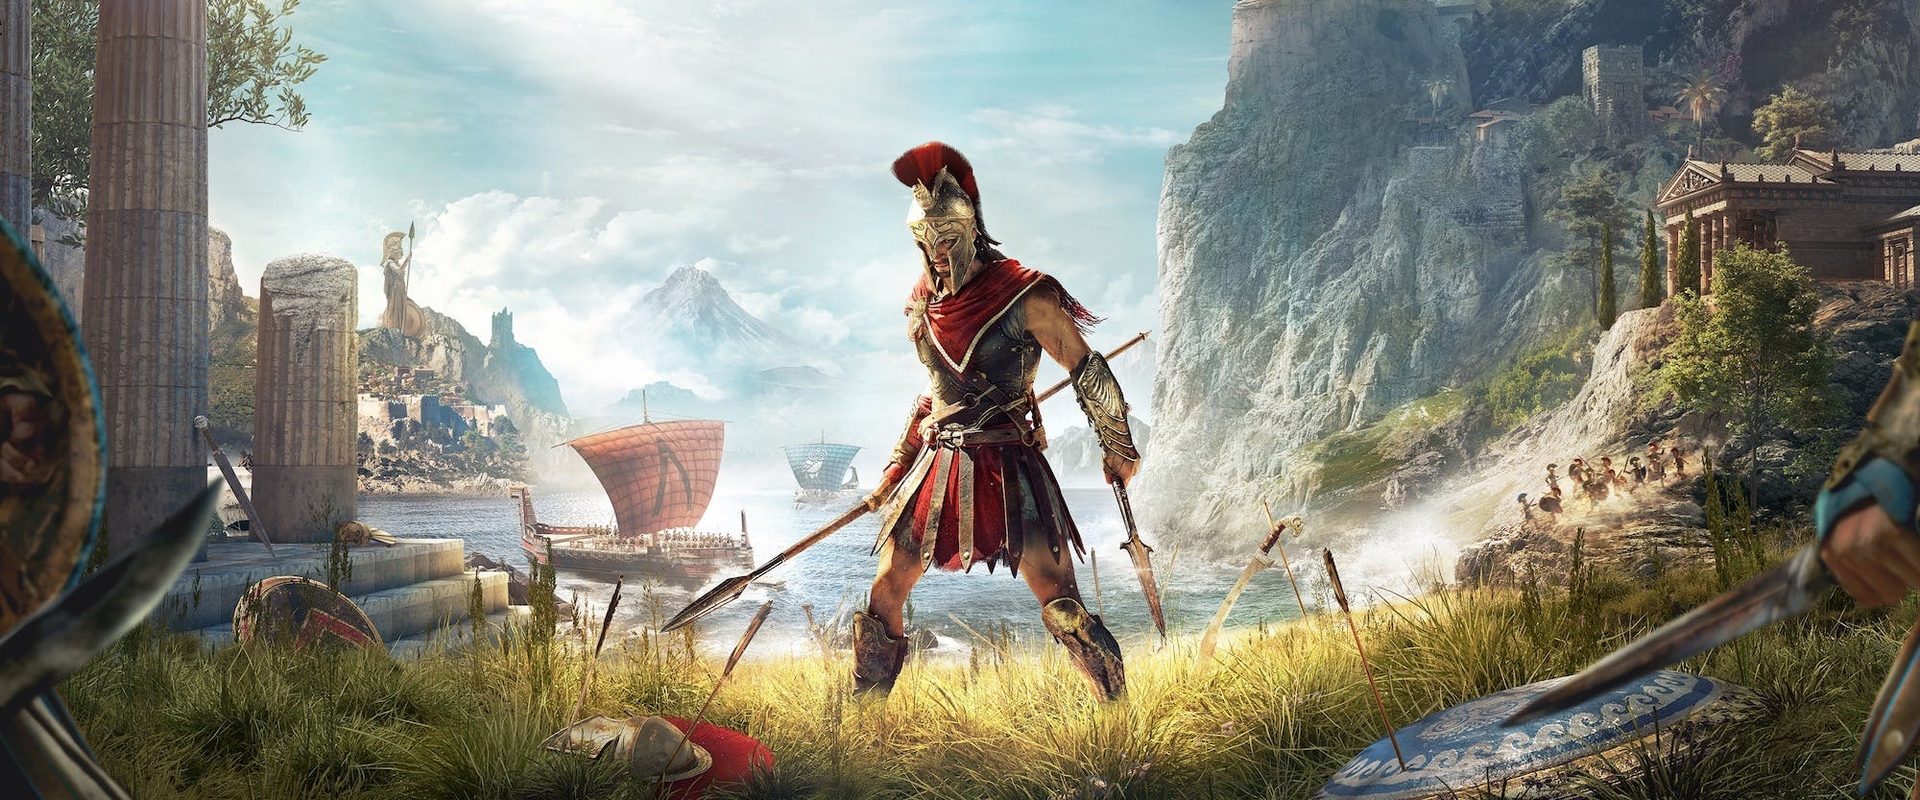 Október egyik nagy durranása lehet az Assassins Creed Odyssey